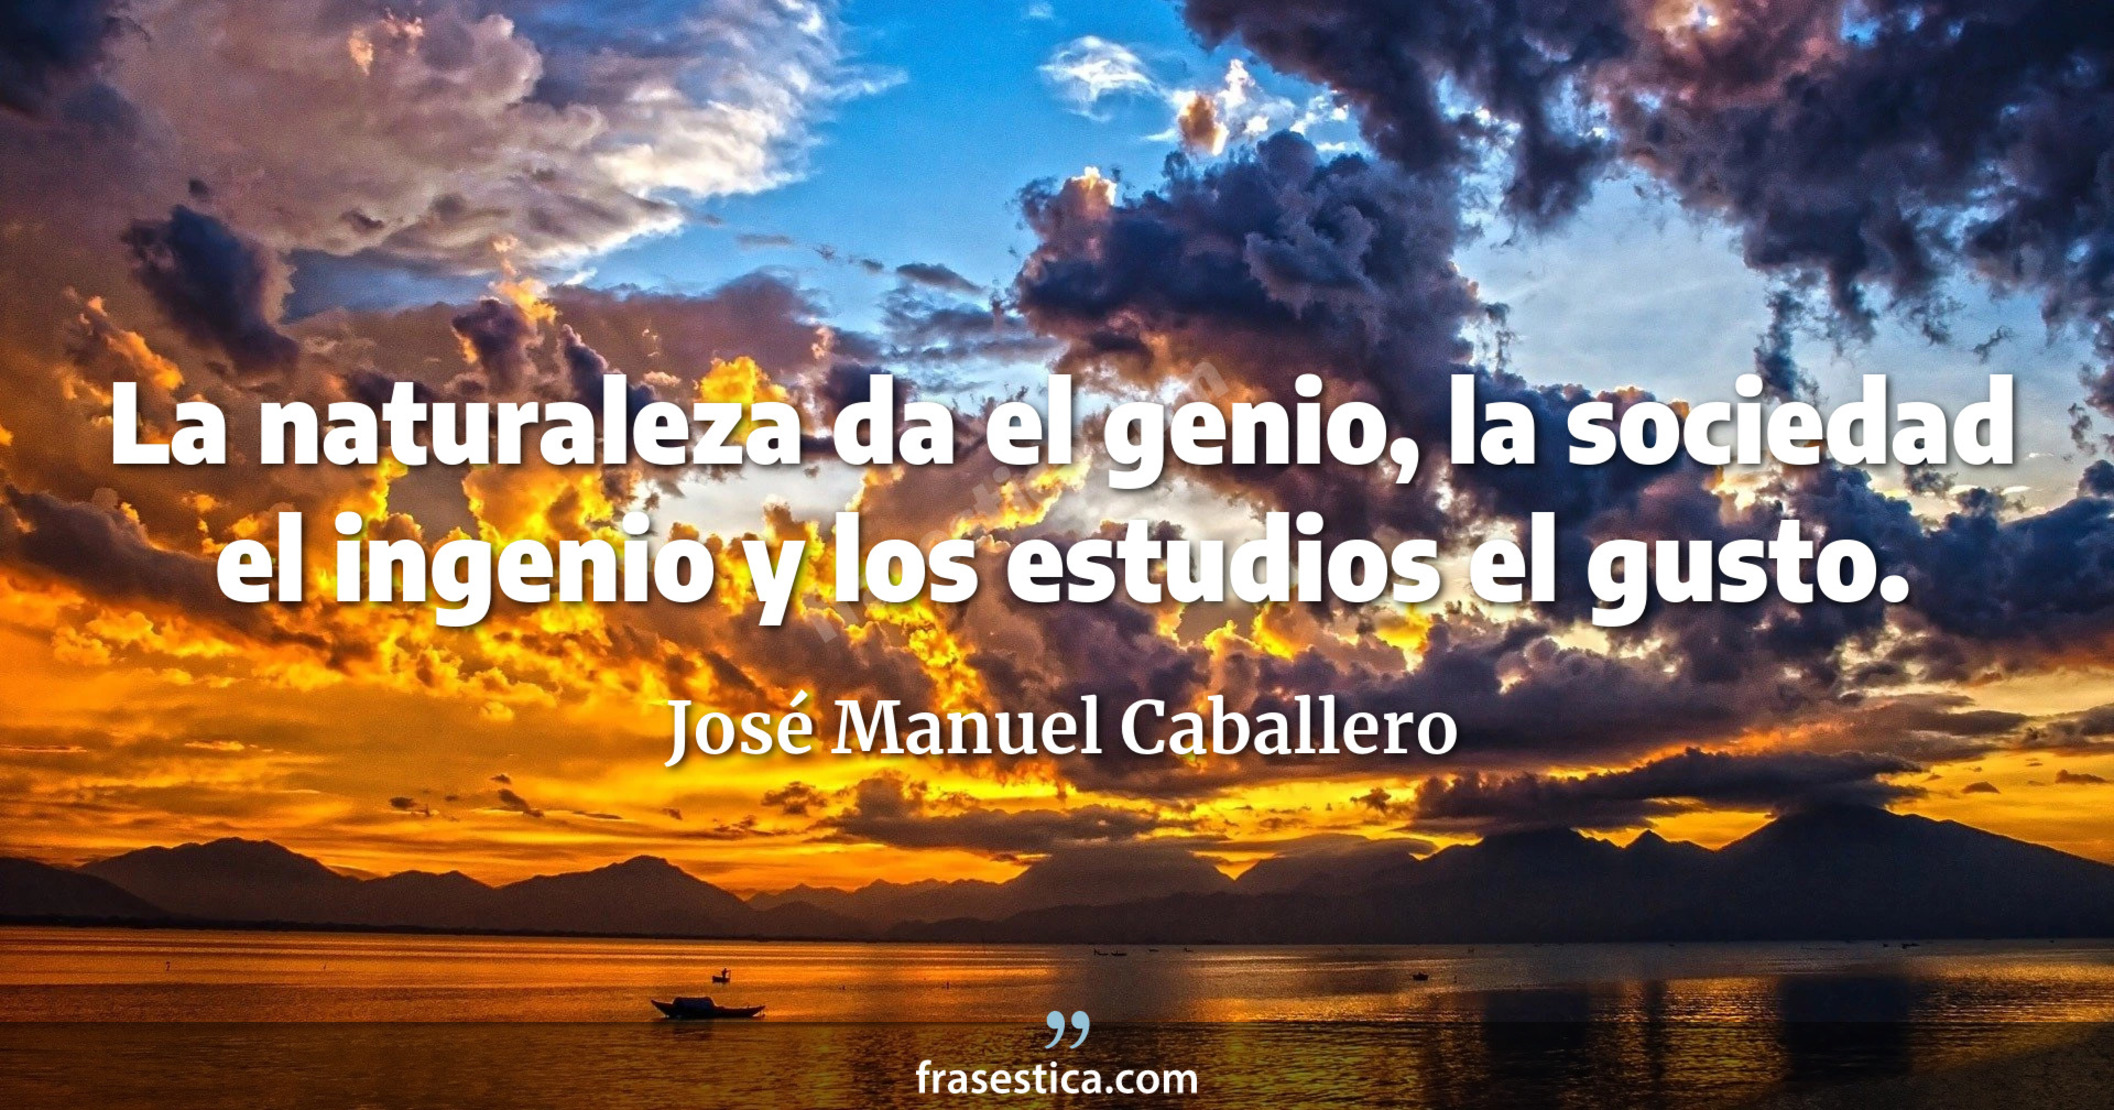 La naturaleza da el genio, la sociedad el ingenio y los estudios el gusto. - José Manuel Caballero